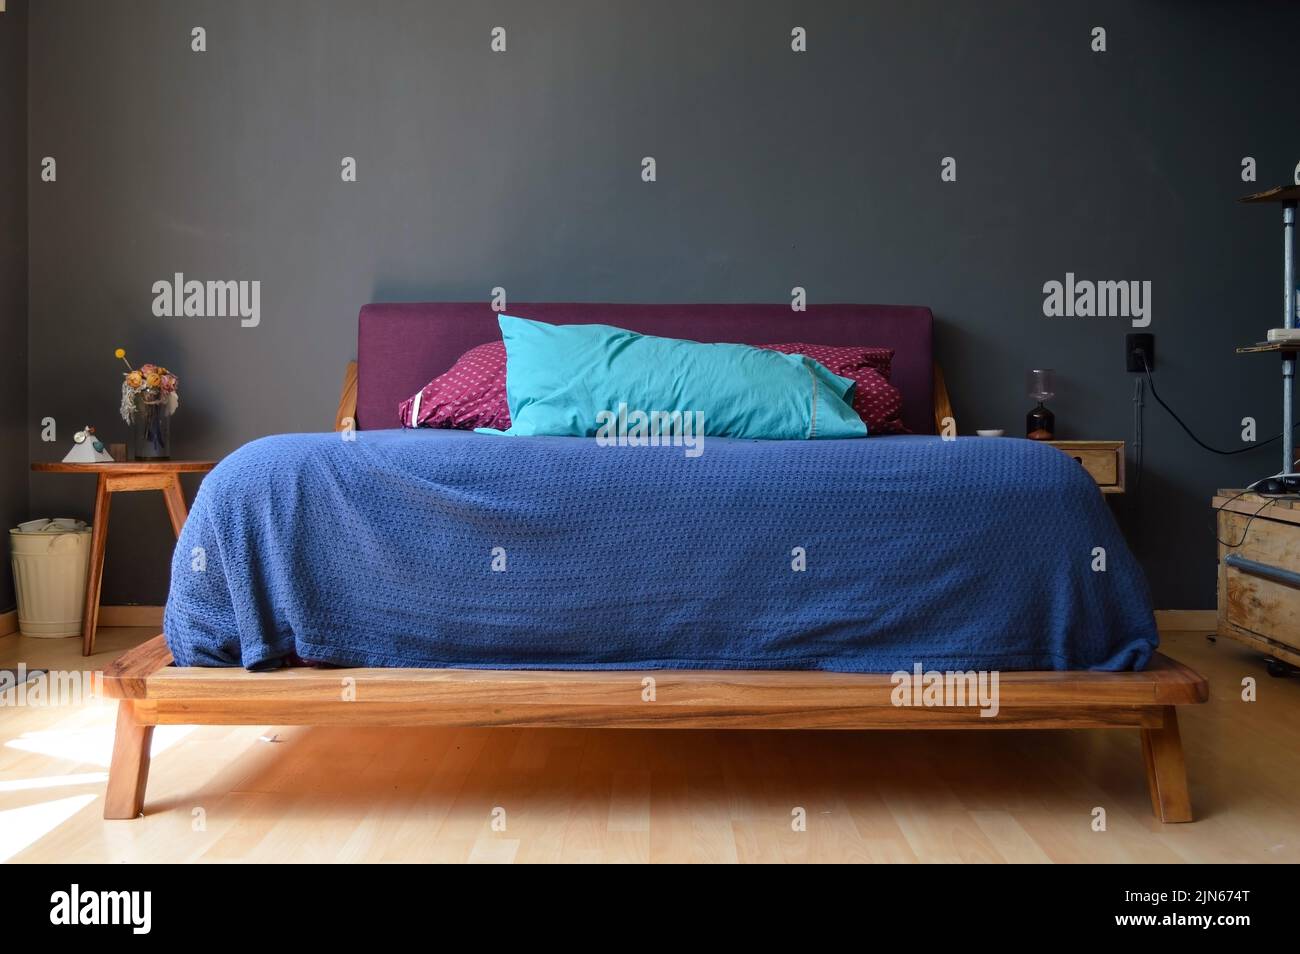 Cette chambre confortable dispose d''un élégant lit bleu et rouge et d''une crédence en bois de chaque côté, contre le mur gris Banque D'Images